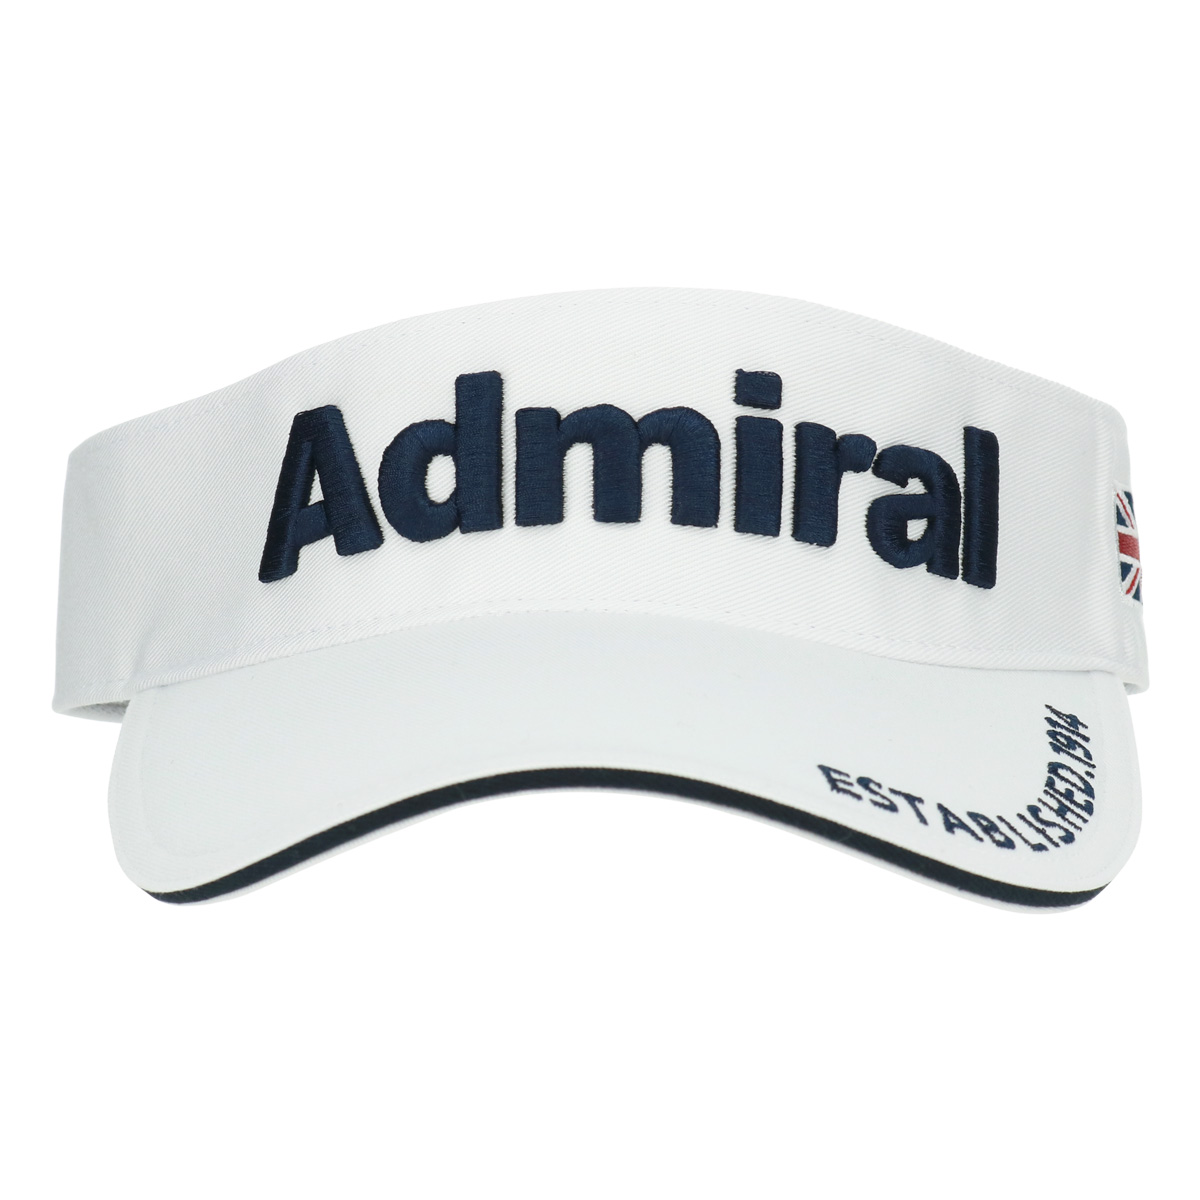 アドミラル ゴルフ サンバイザー パフォーマンスプロ メンズ ADMB4A03 Admiral GO...